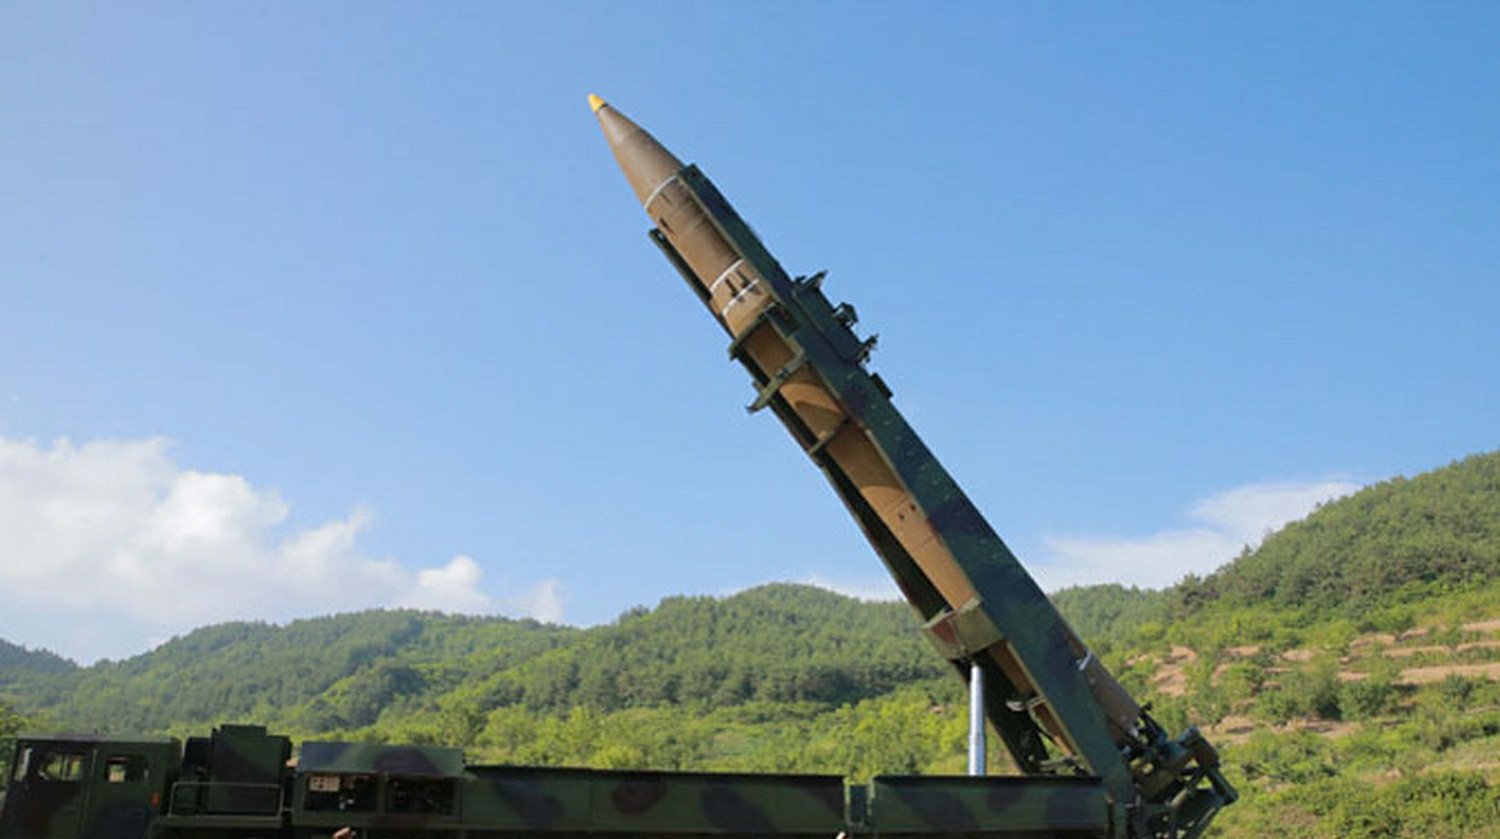 Dailystorm - Украинское КБ признало возможность копирования ракетных двигателей для КНДР